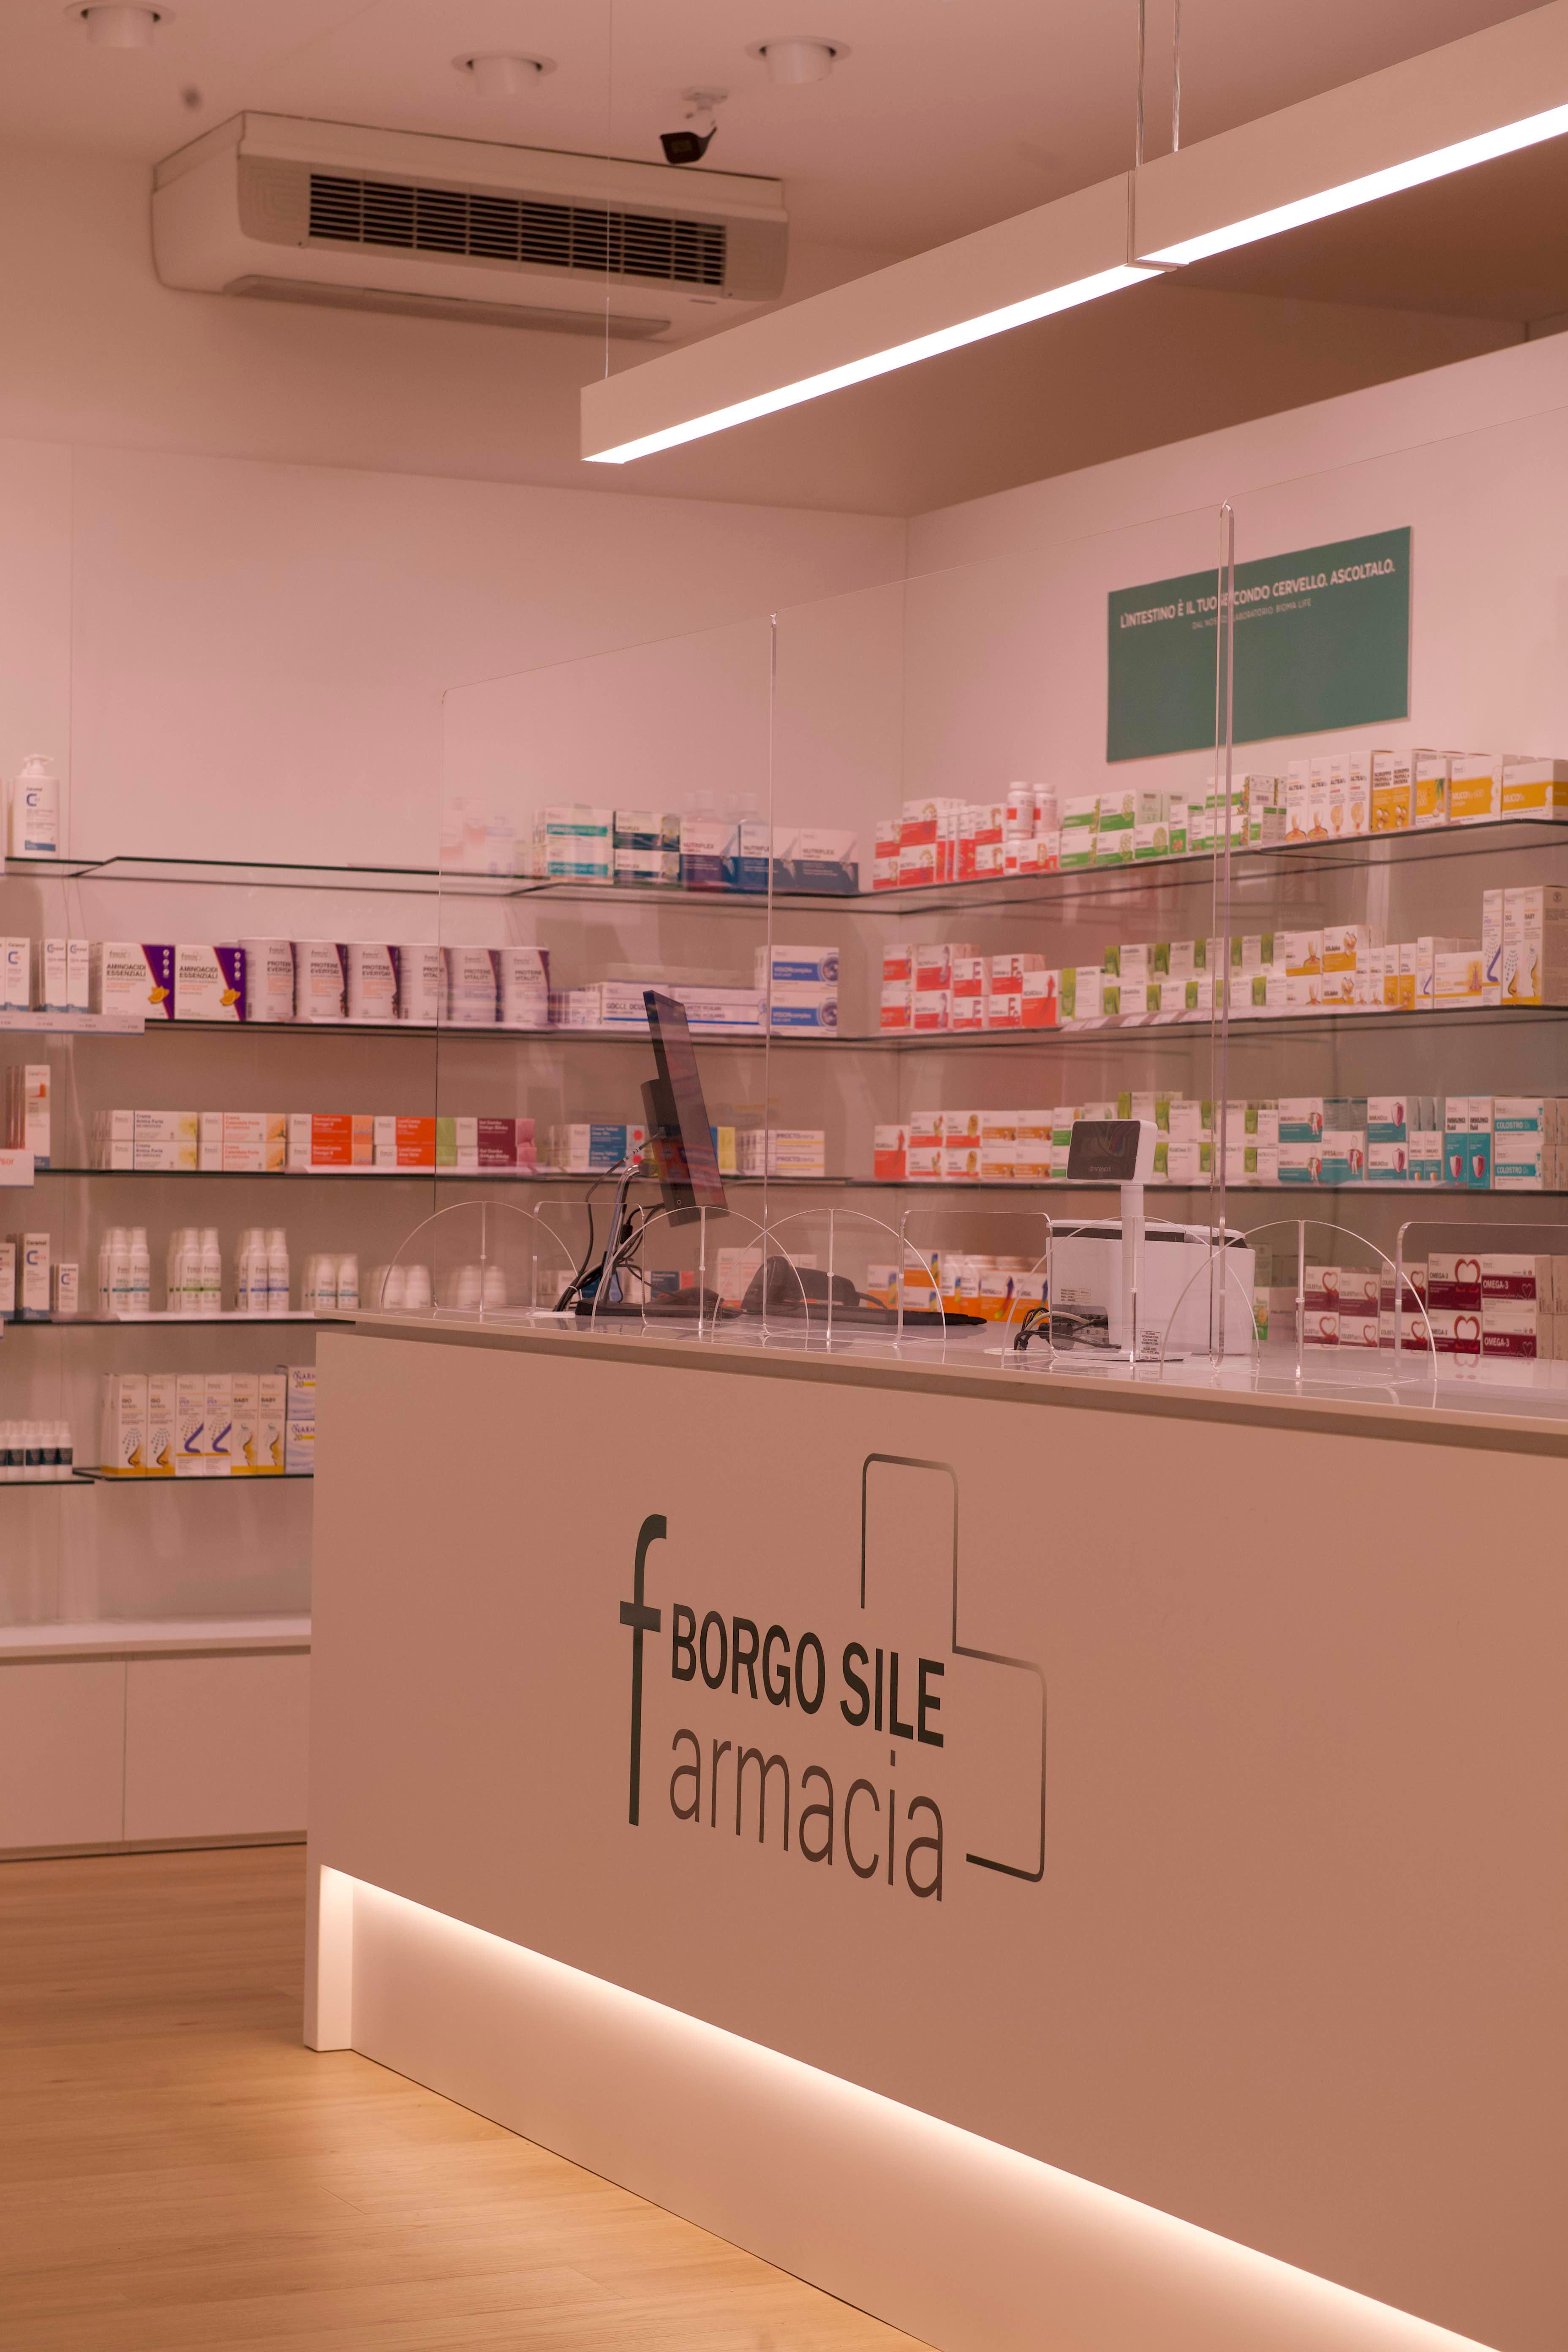 Farmacia Borgo Sile Gallery Linealightgroup 1280X1920 1